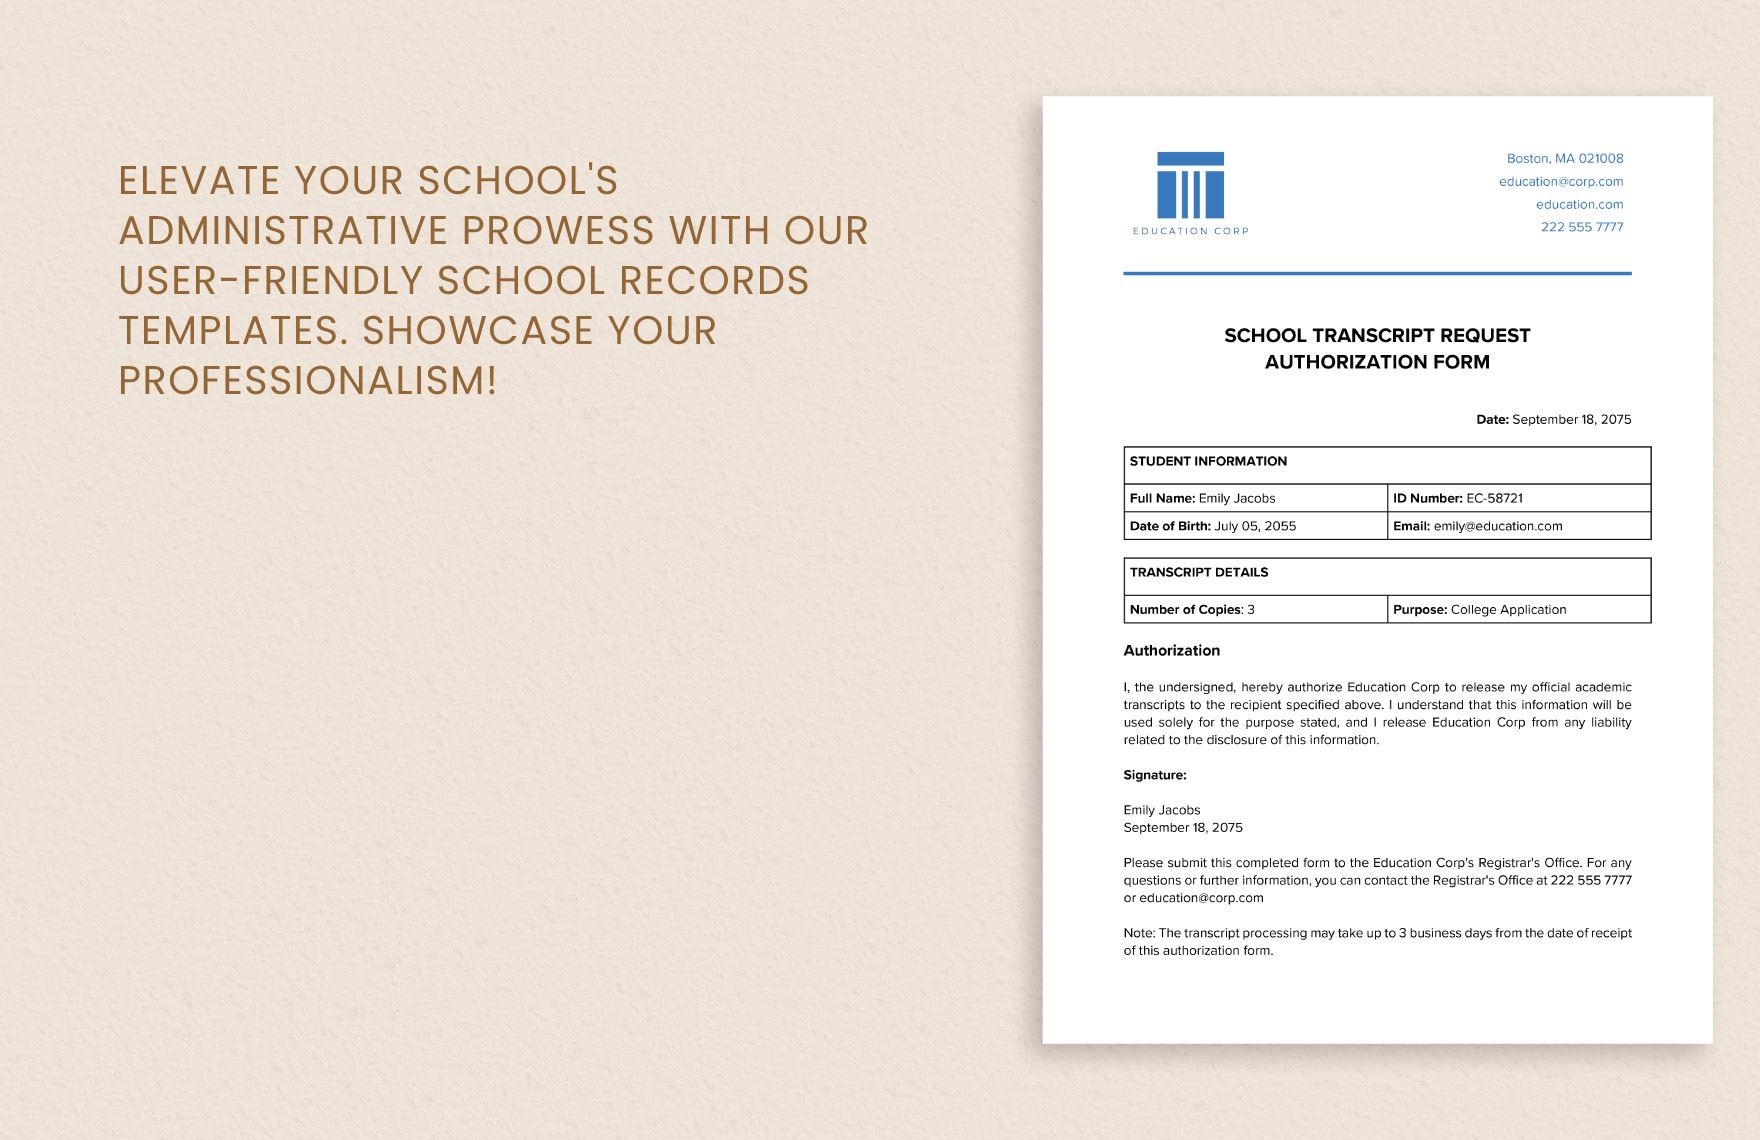 School Transcript Request Authorization Form Template